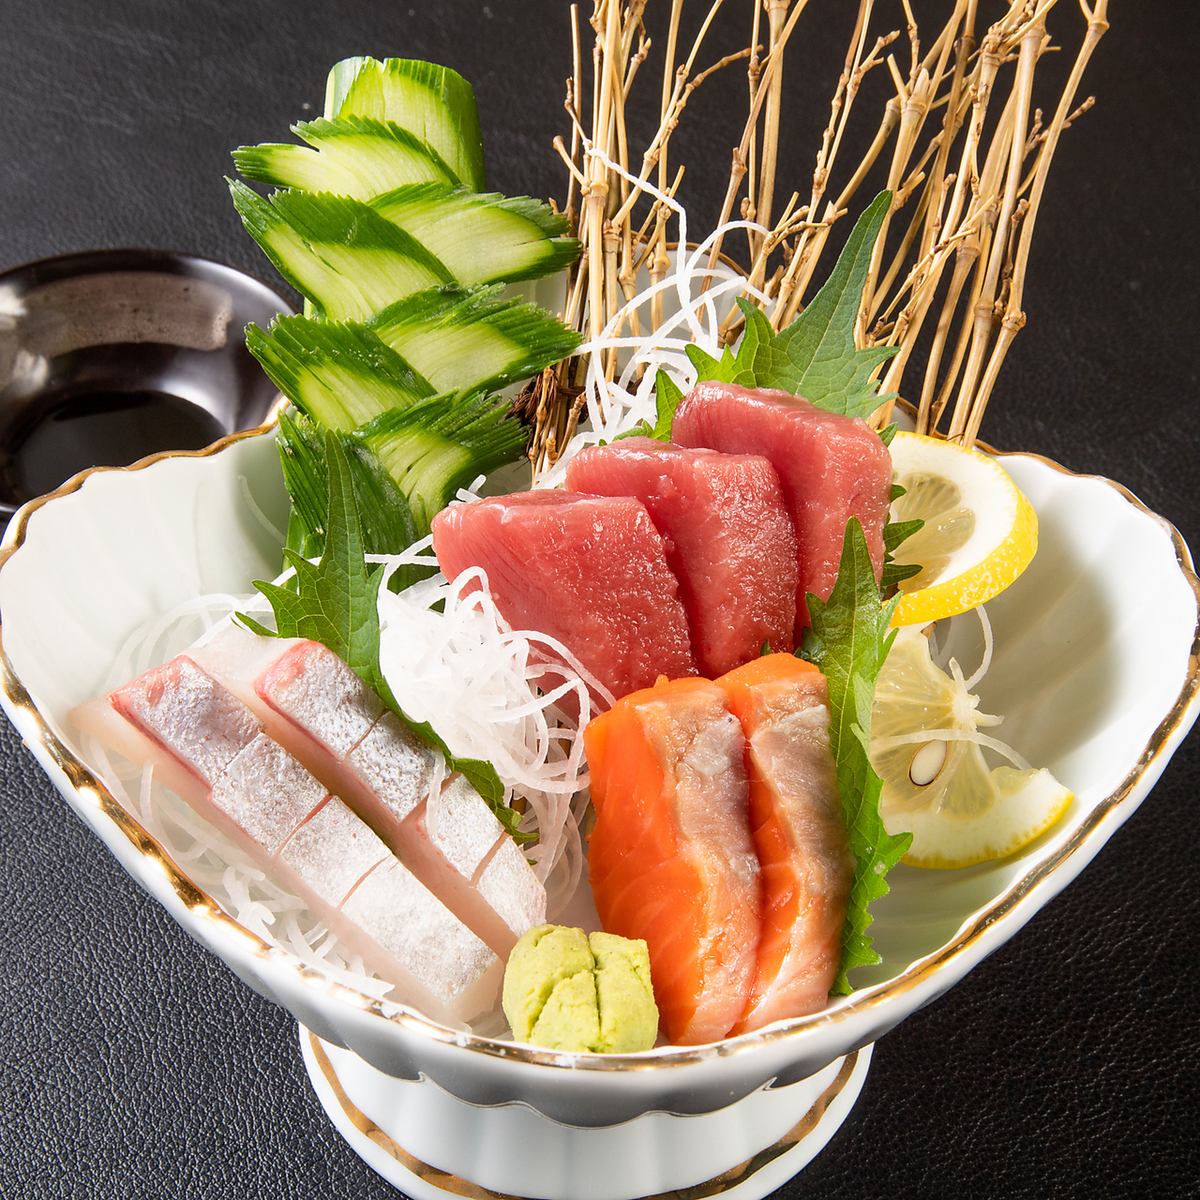 請用生魚片和壽司享用新鮮捕獲的魚♪